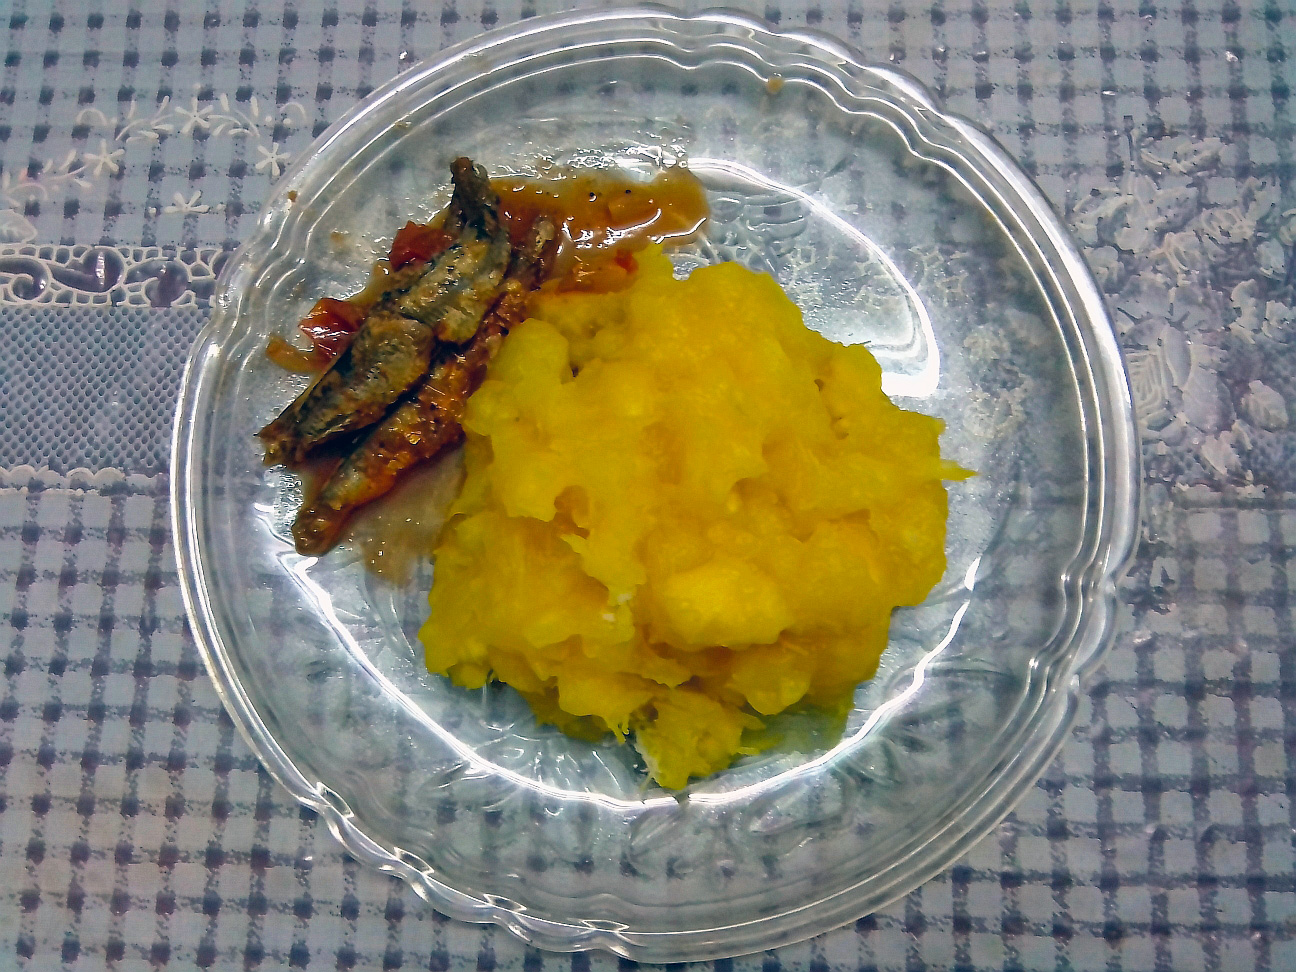 Maravalli kizhangu with mathi fish kuzhambu (Tapioca with sardine fish gravy)